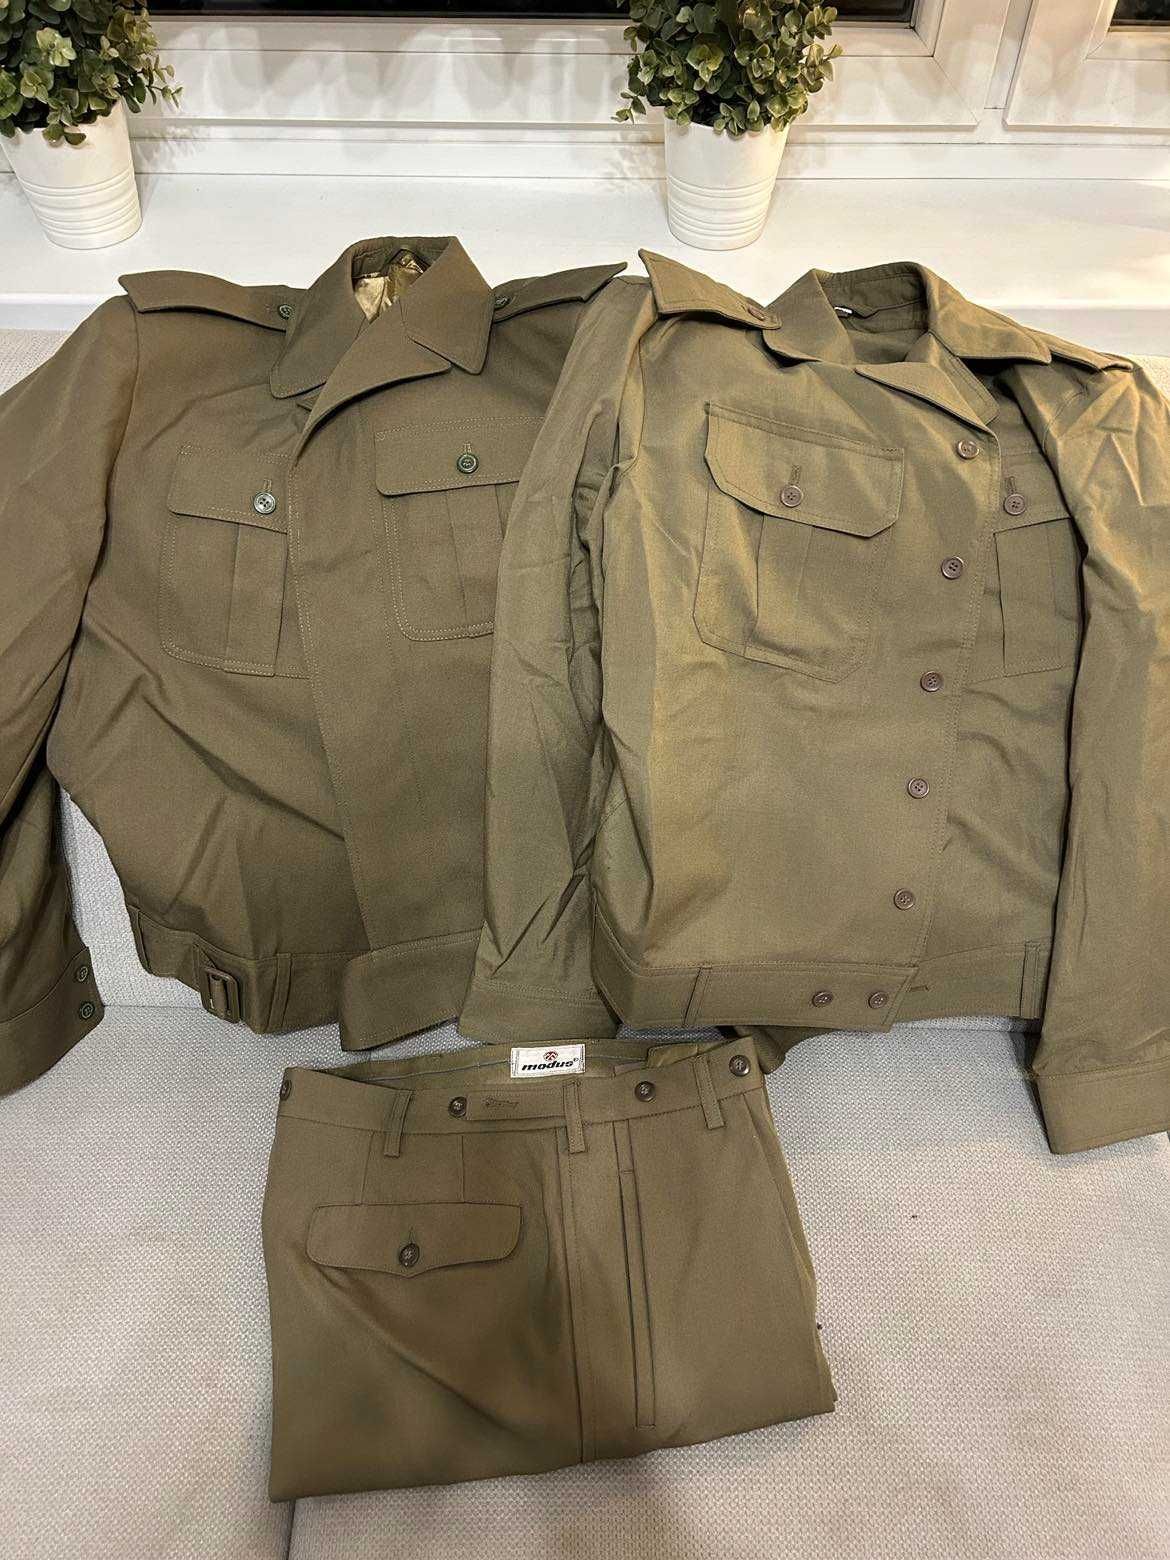 Wiatrówka kurtka spodnie oficerska wojsk lądowych 109/MON kpl